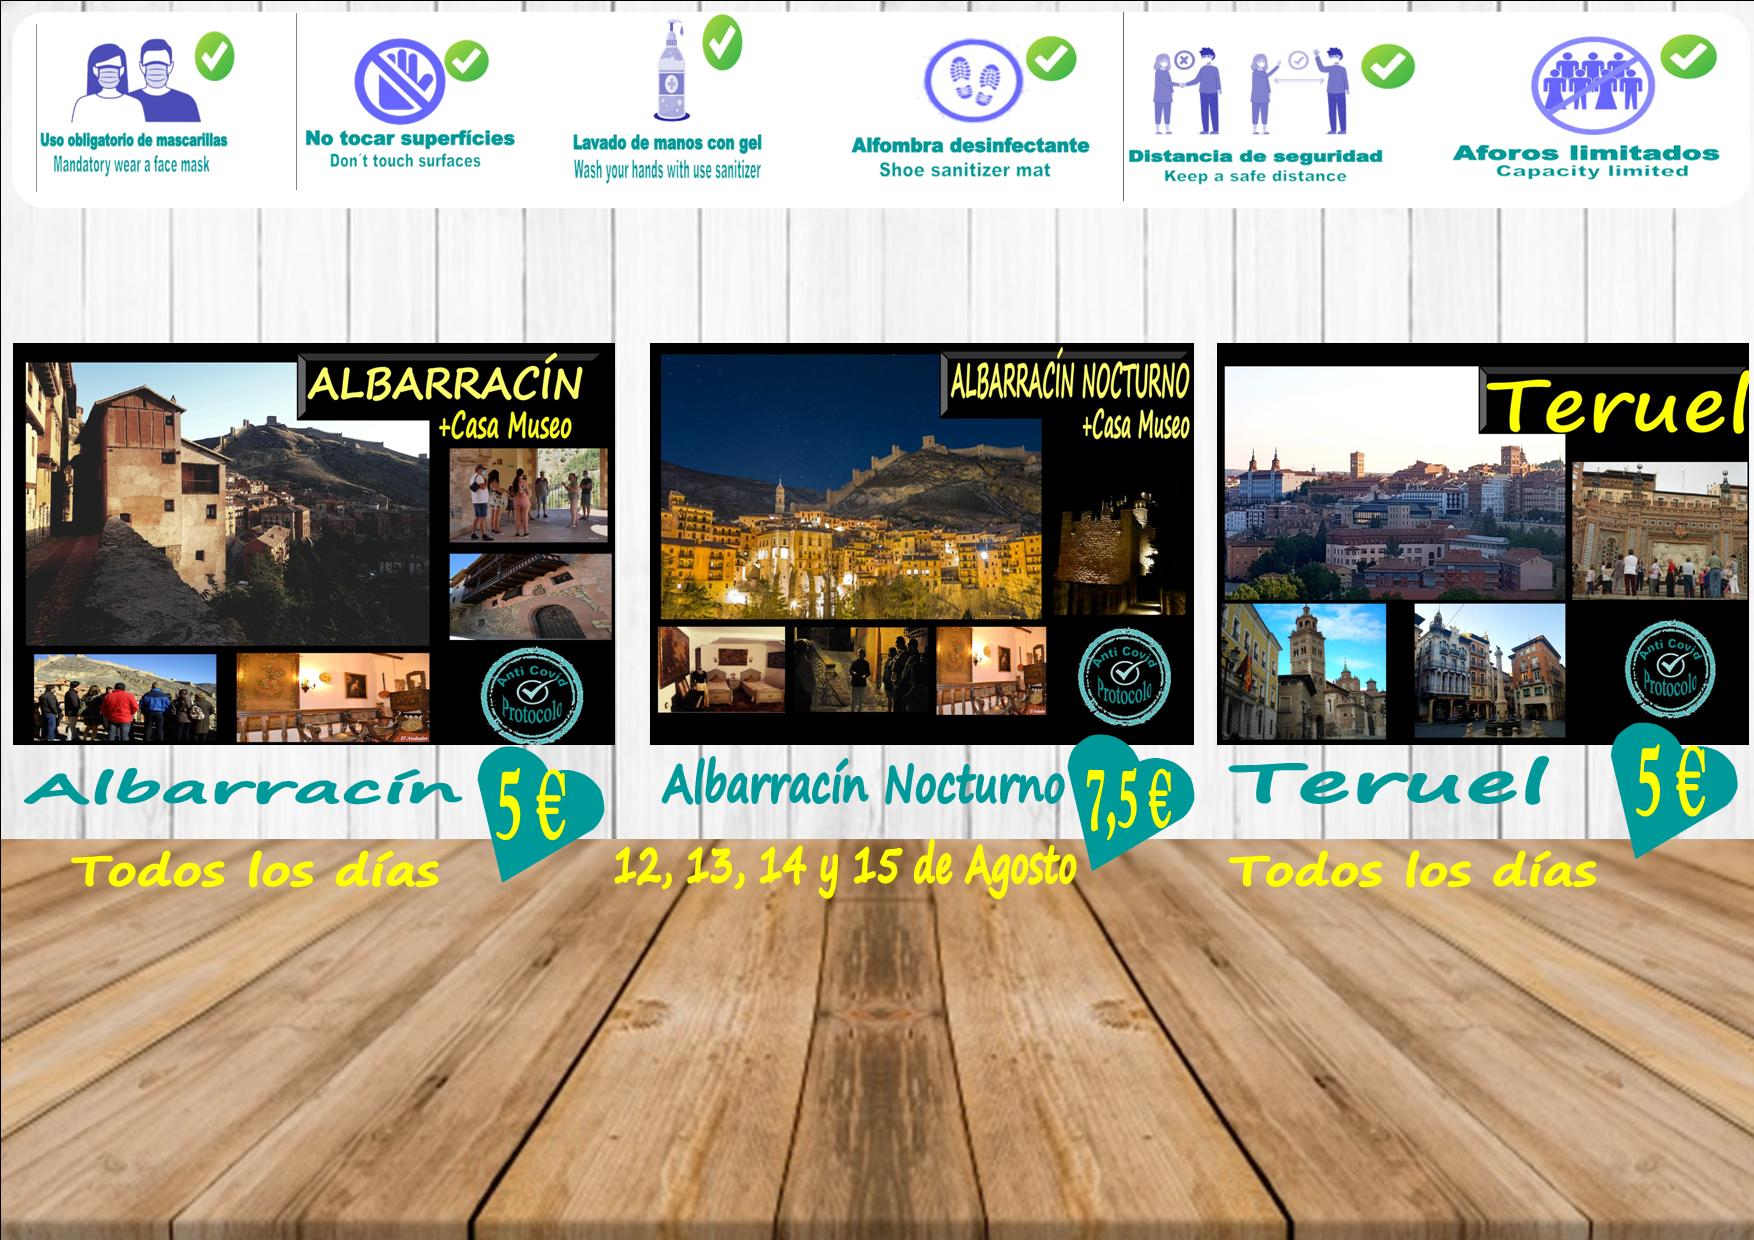 Esta semana…Albarracín, Teruel y Albarracín Nocturno del 12 al 15!